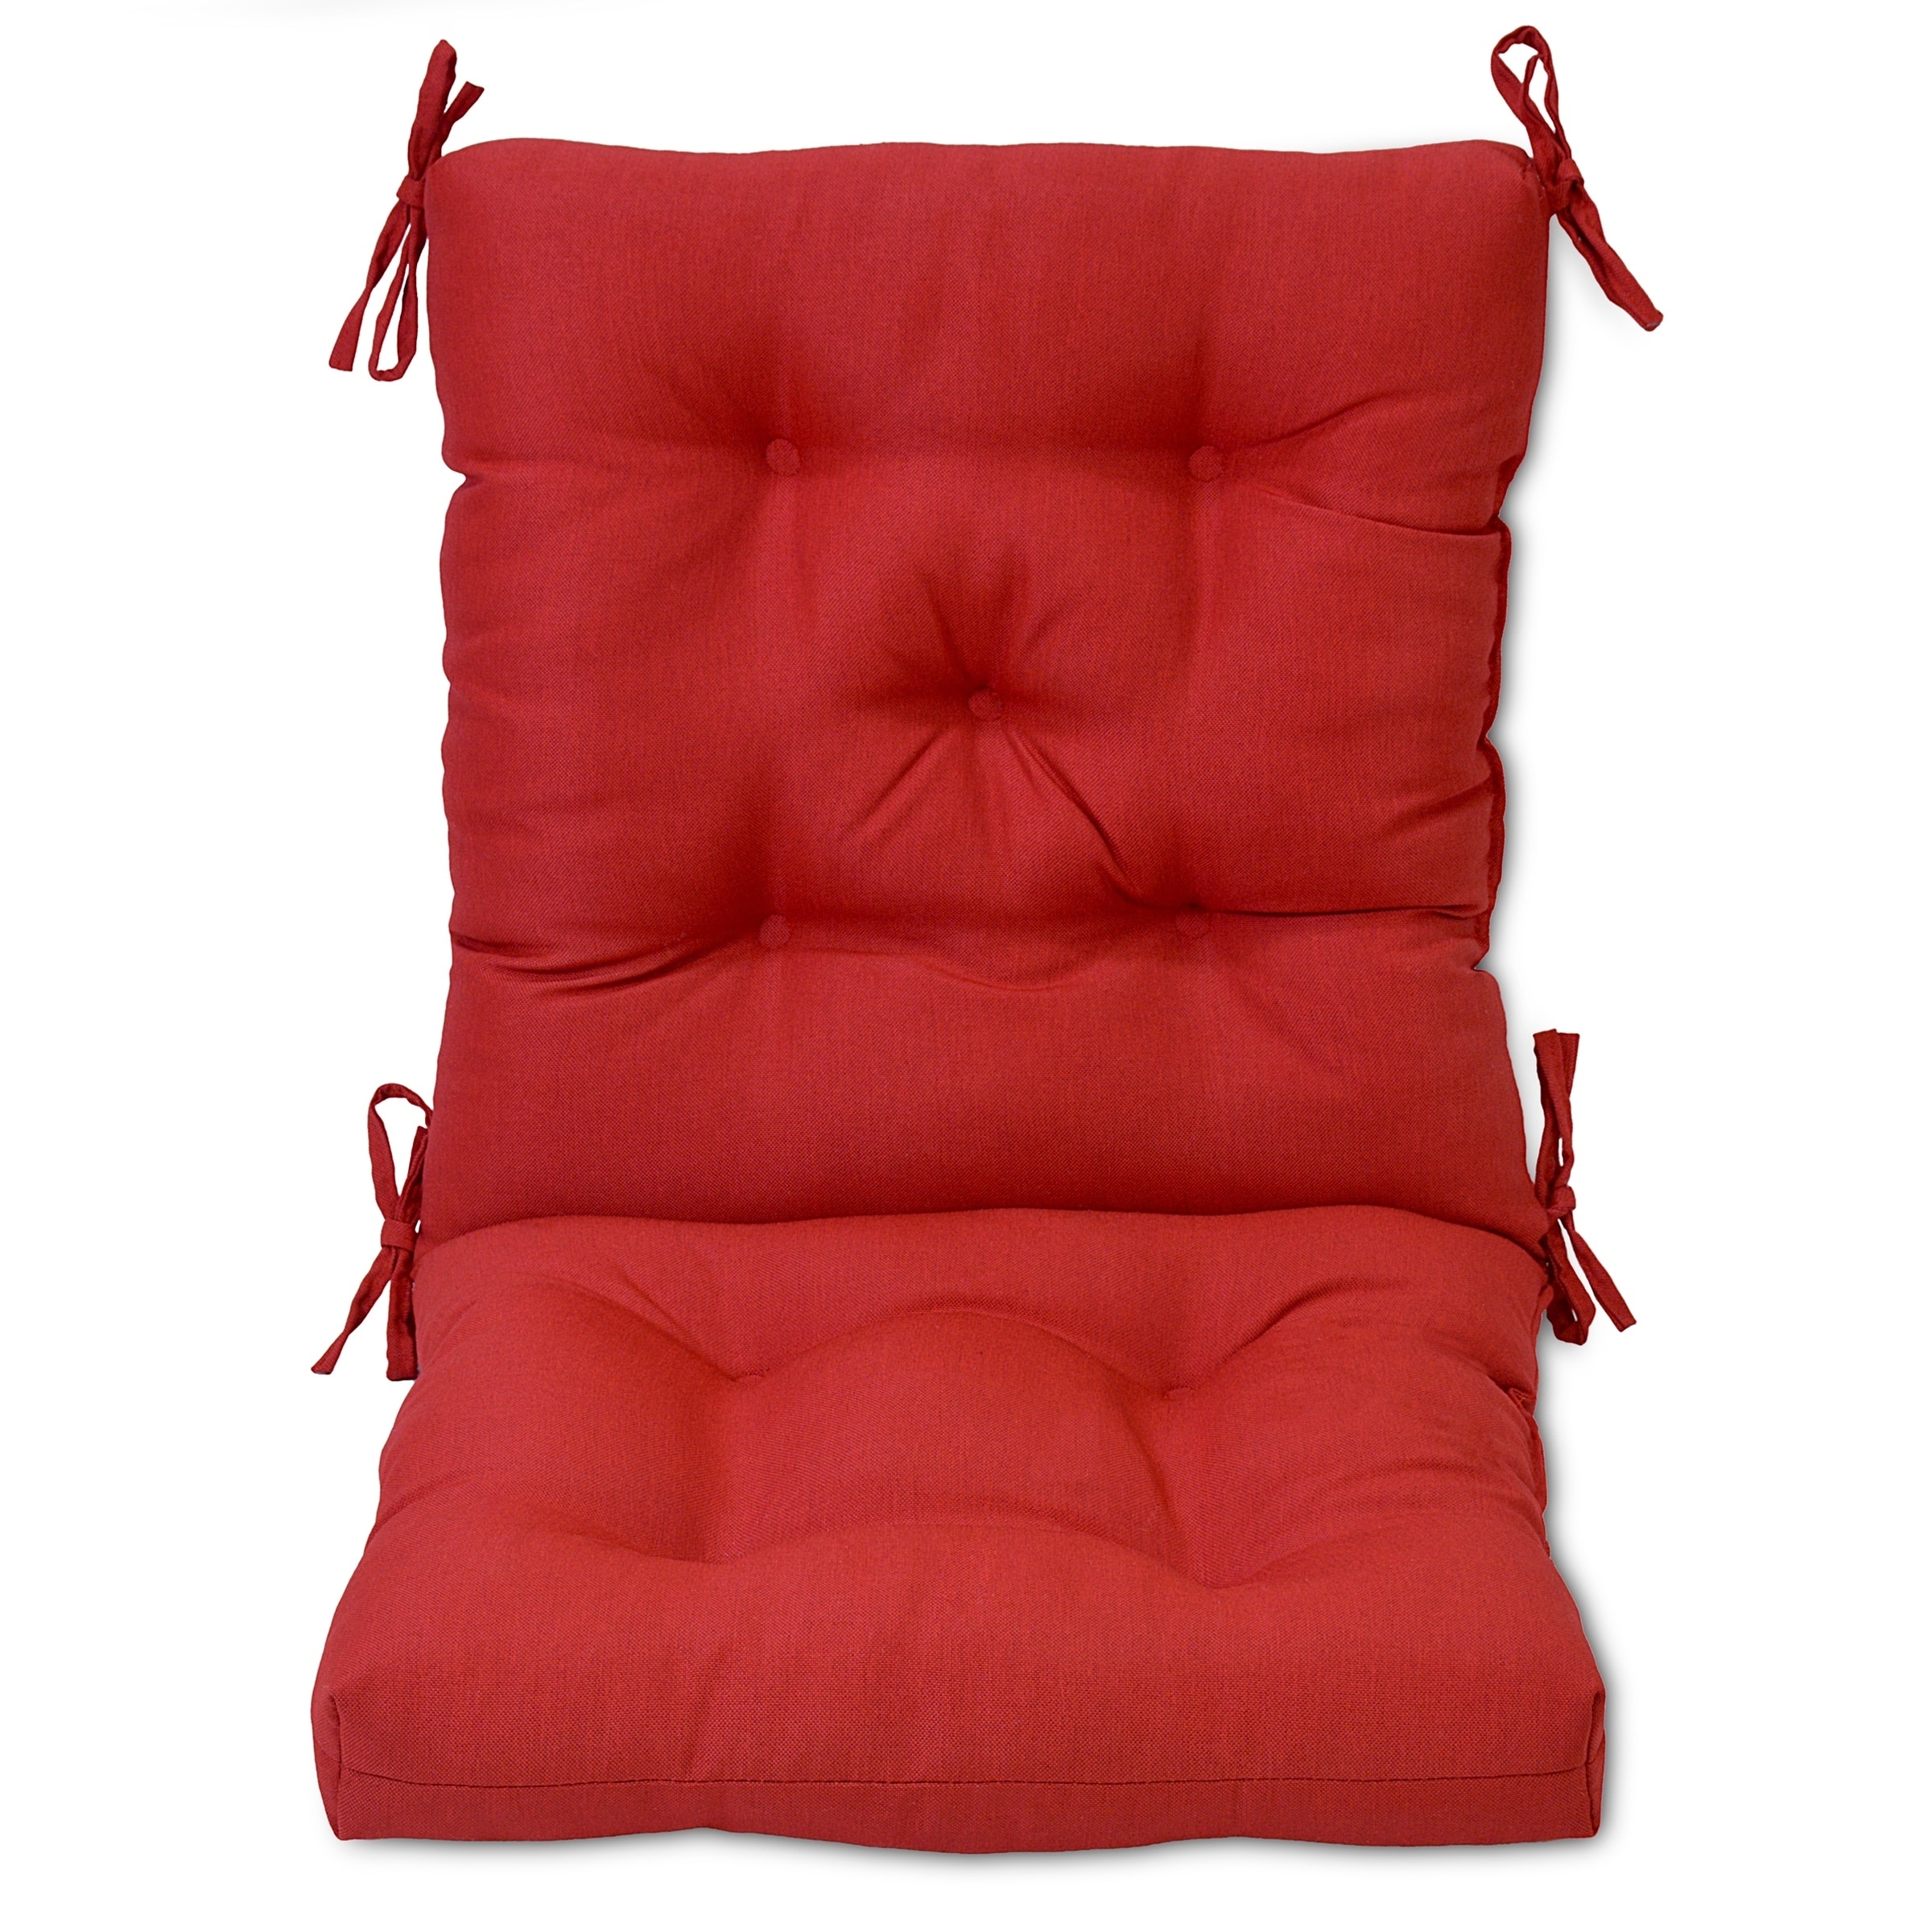 Tufted Chair Back Cushion: 18 x 20